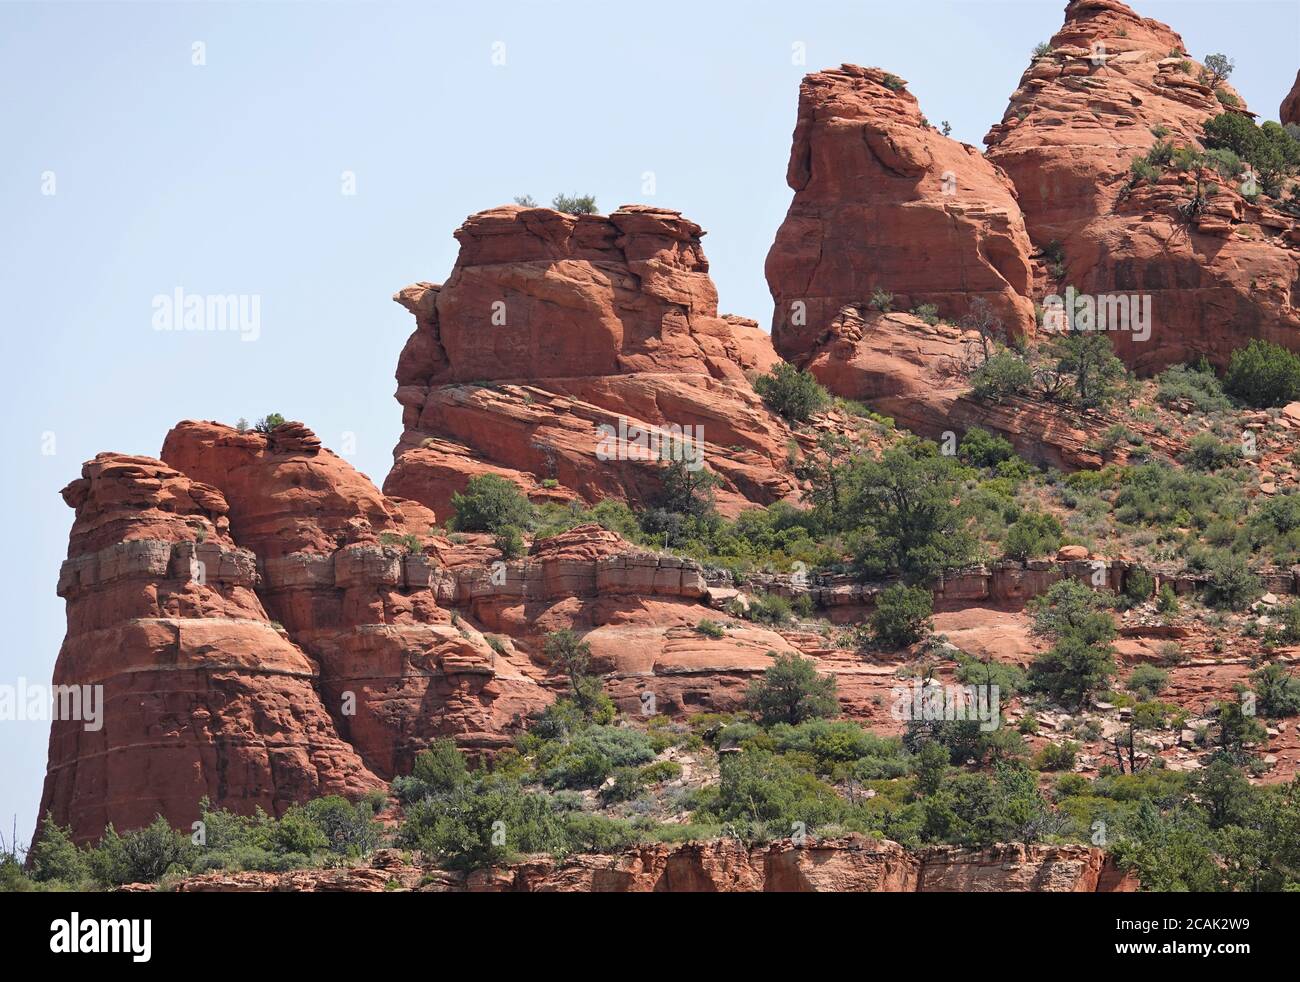 En explorant les différents sentiers et routes arrière autour de Sedona Arizona, vous pourrez admirer des vues époustouflantes et des formations rocheuses incroyables. Banque D'Images